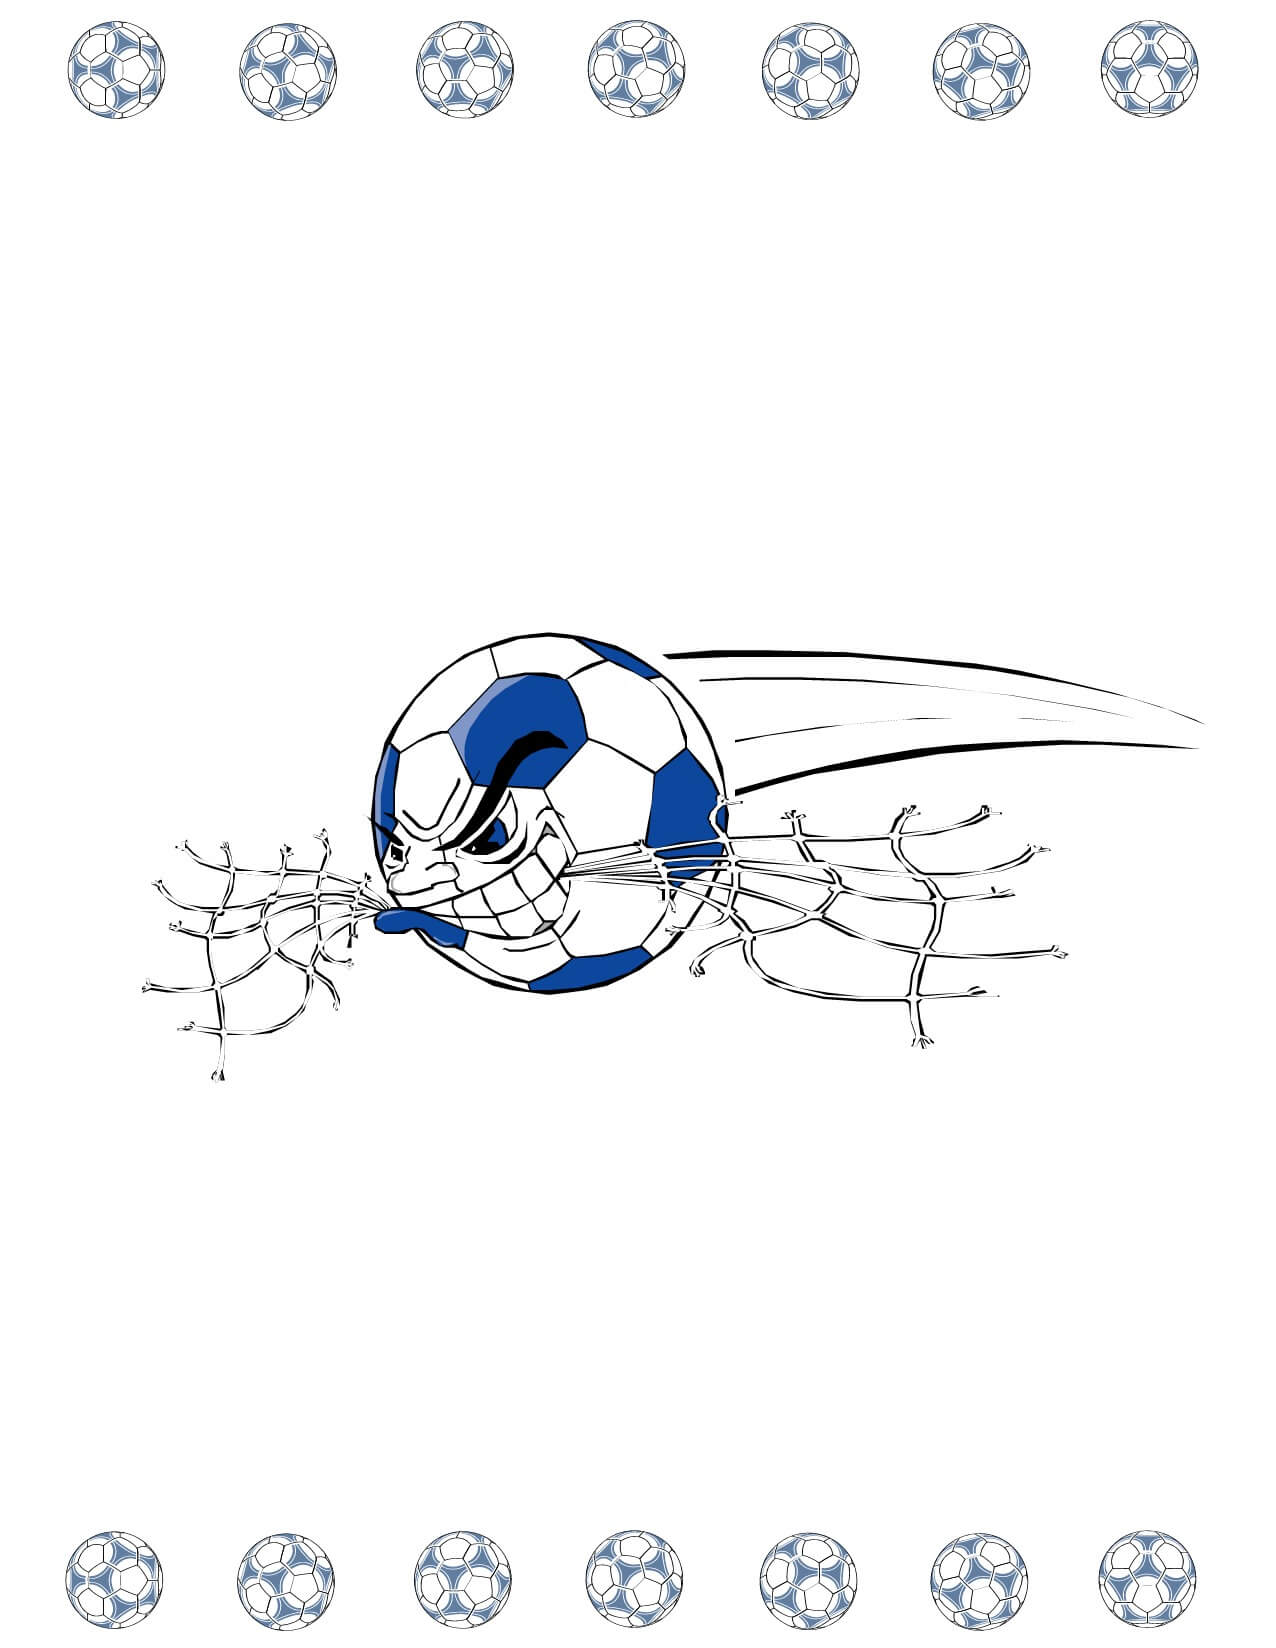 Soccer Award Certificate Maker: Make Personalized Soccer Awards With Regard To Soccer Certificate Template